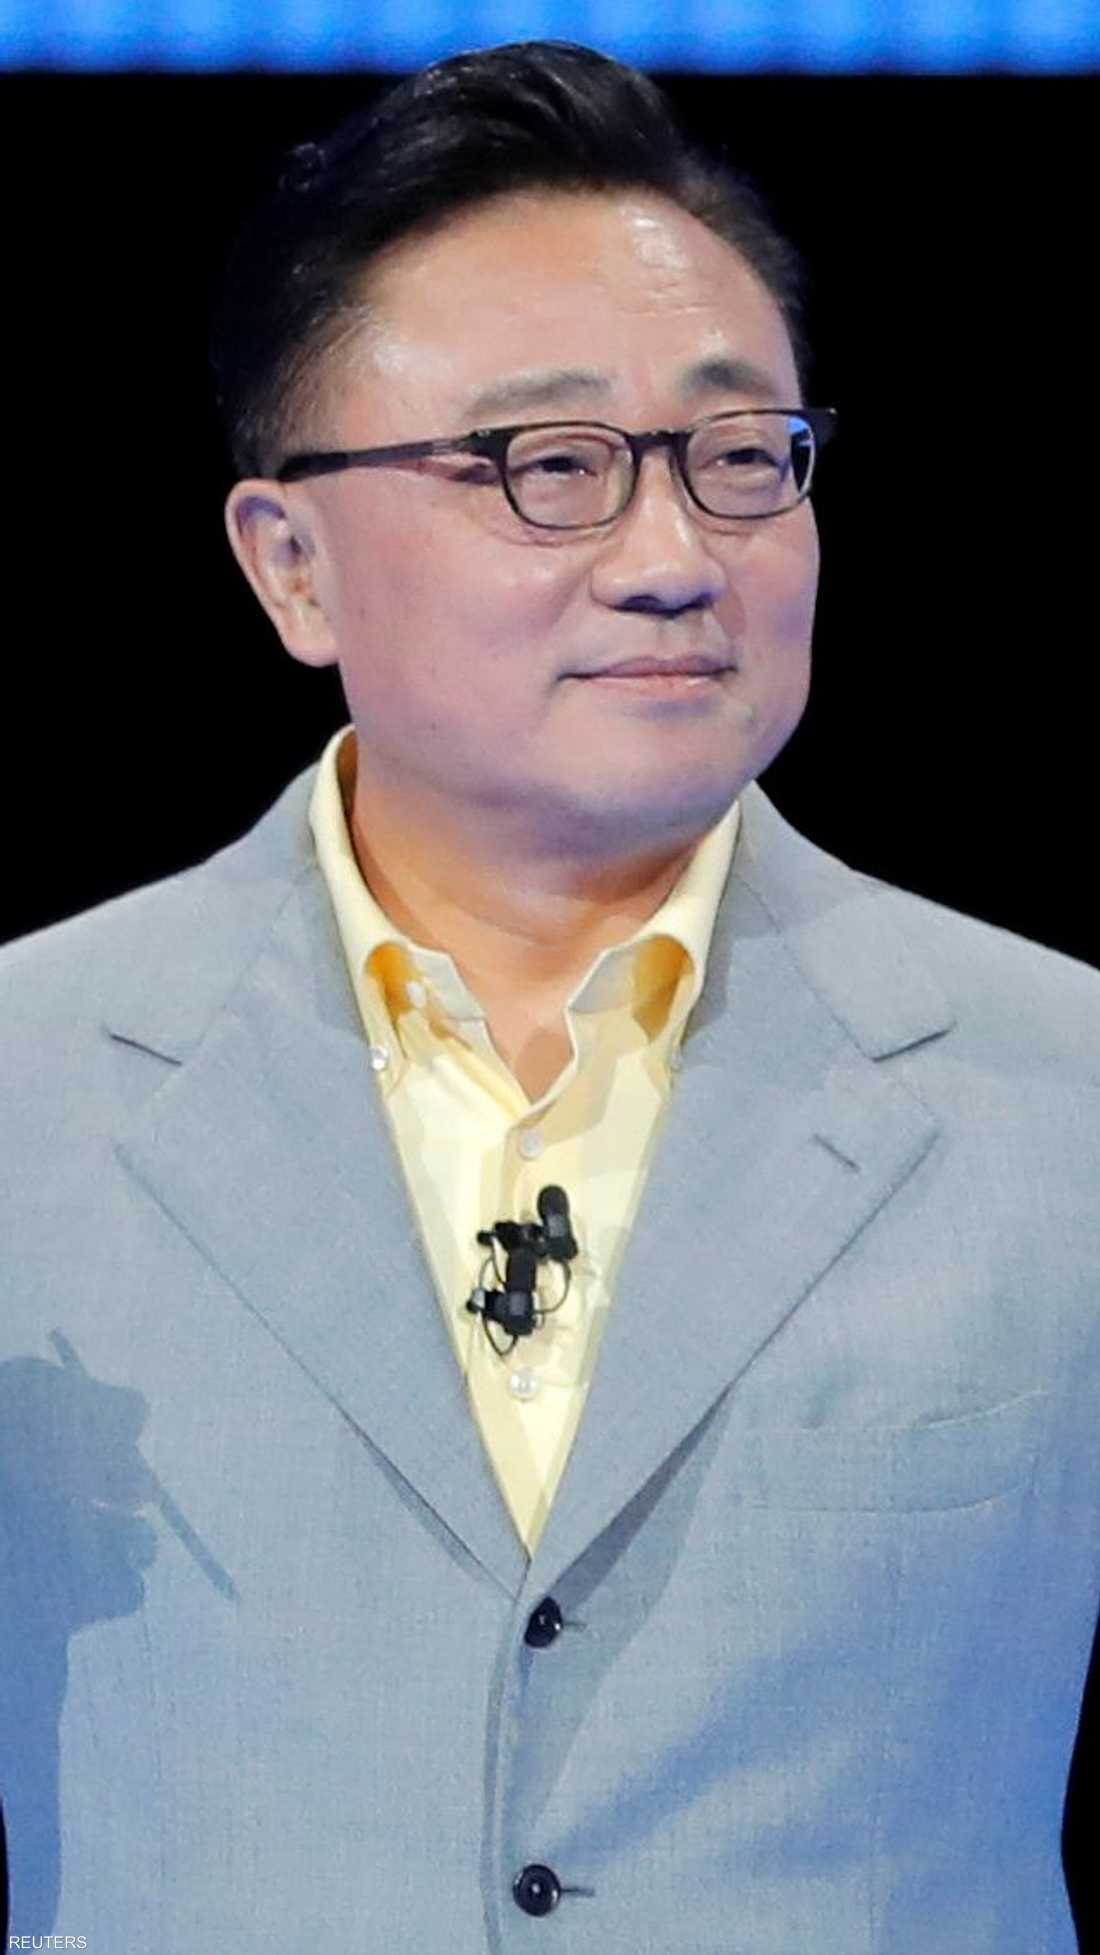 الرئيس التنفيذي لسامسونغ دي جي كو عرض غالاكسي الجديد